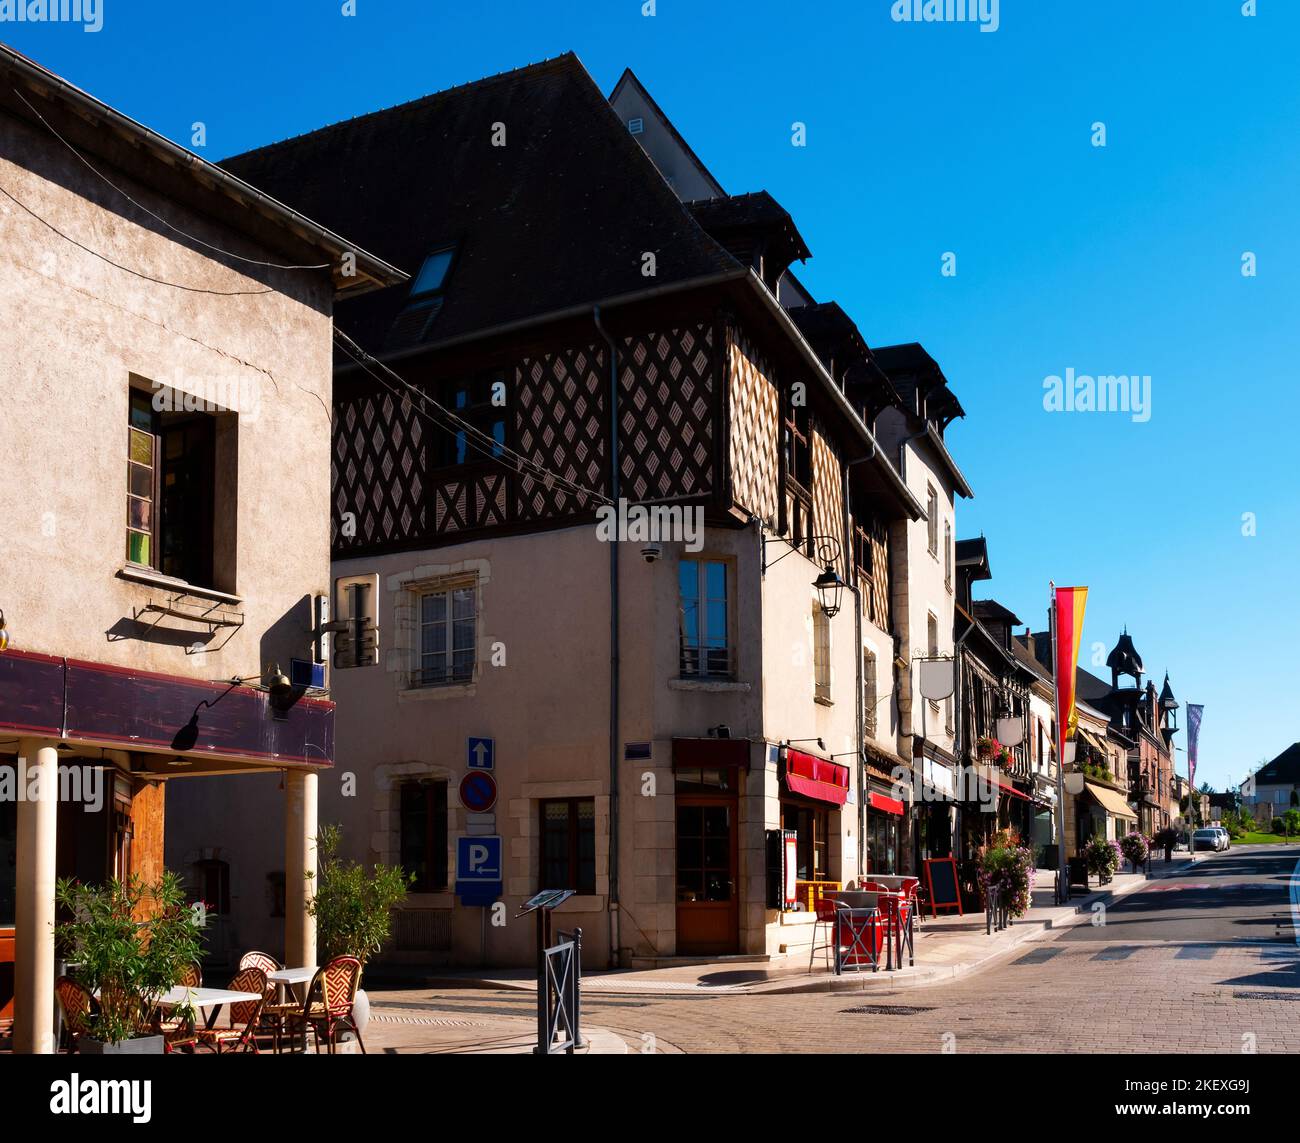 Calle en el municipio francés de Aubigny-sur-Nere con casas de entramado de madera Foto de stock